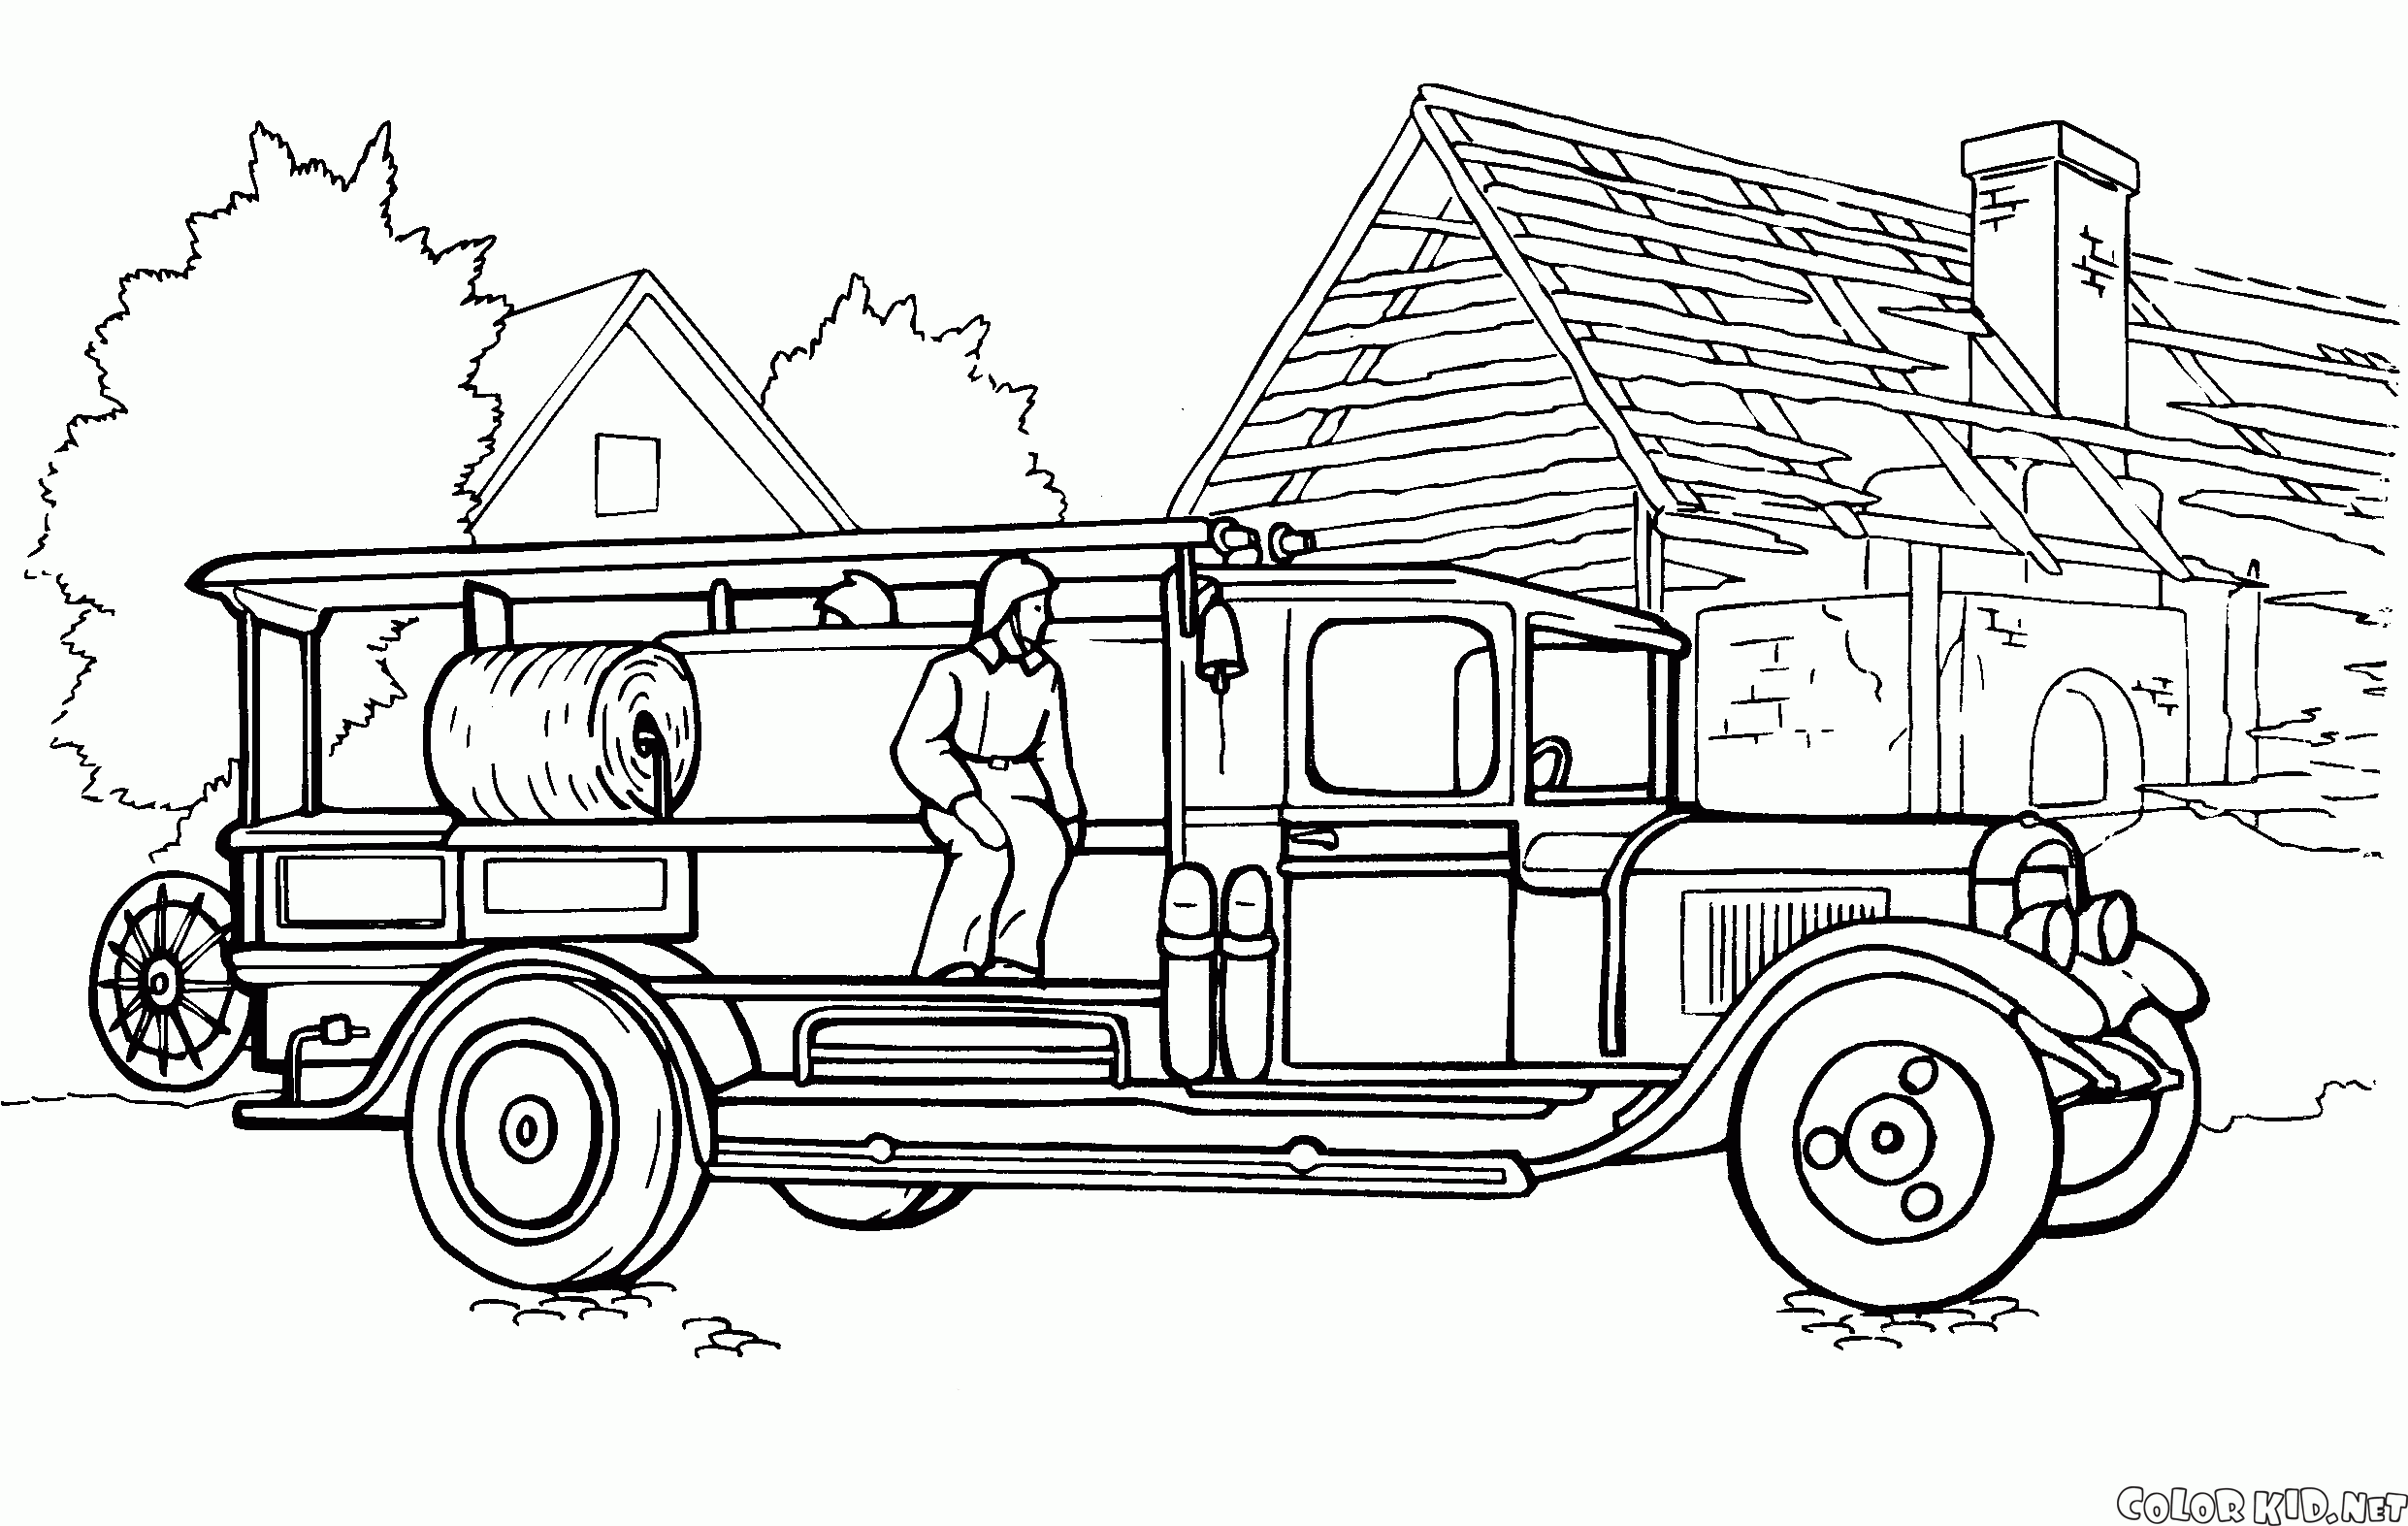 Camión de bomberos 19, pero del siglo